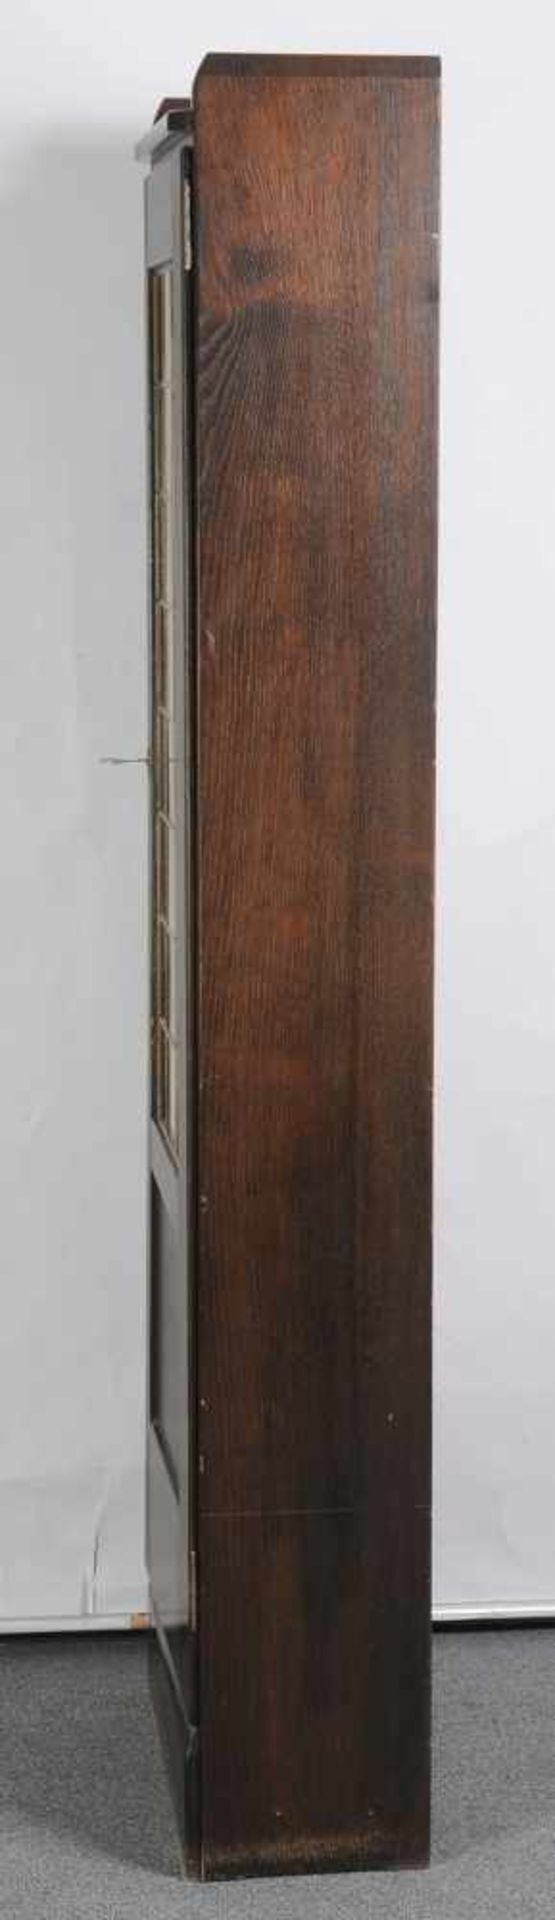 Bücherschrank, Entwurf Richard RiemerschmidEiche, geräuchert. 1-türiger Korpus mit Bleiverglasung, - Image 5 of 6